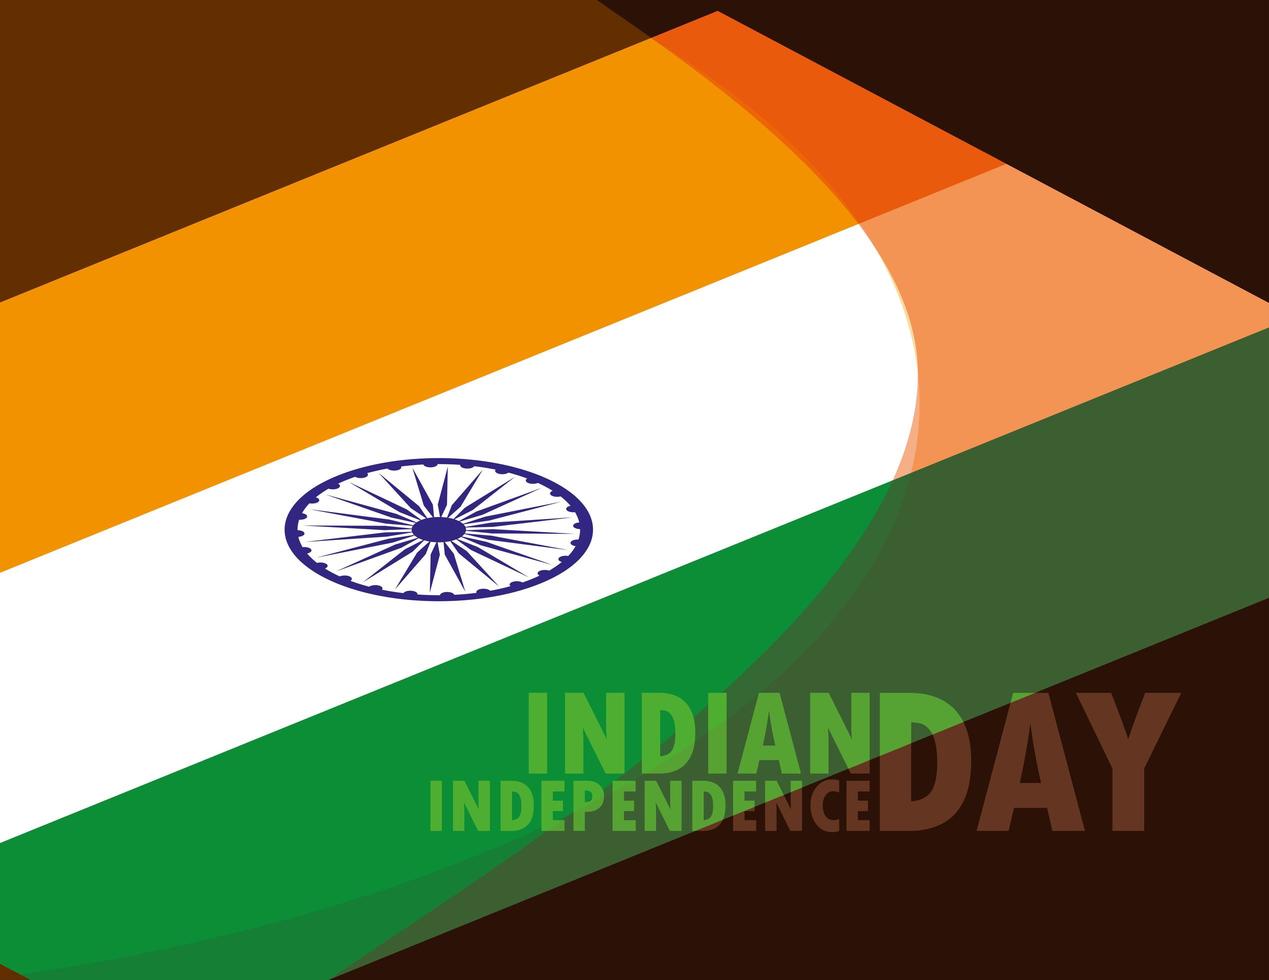 indisk självständighetsdagen affisch med flagga vektor